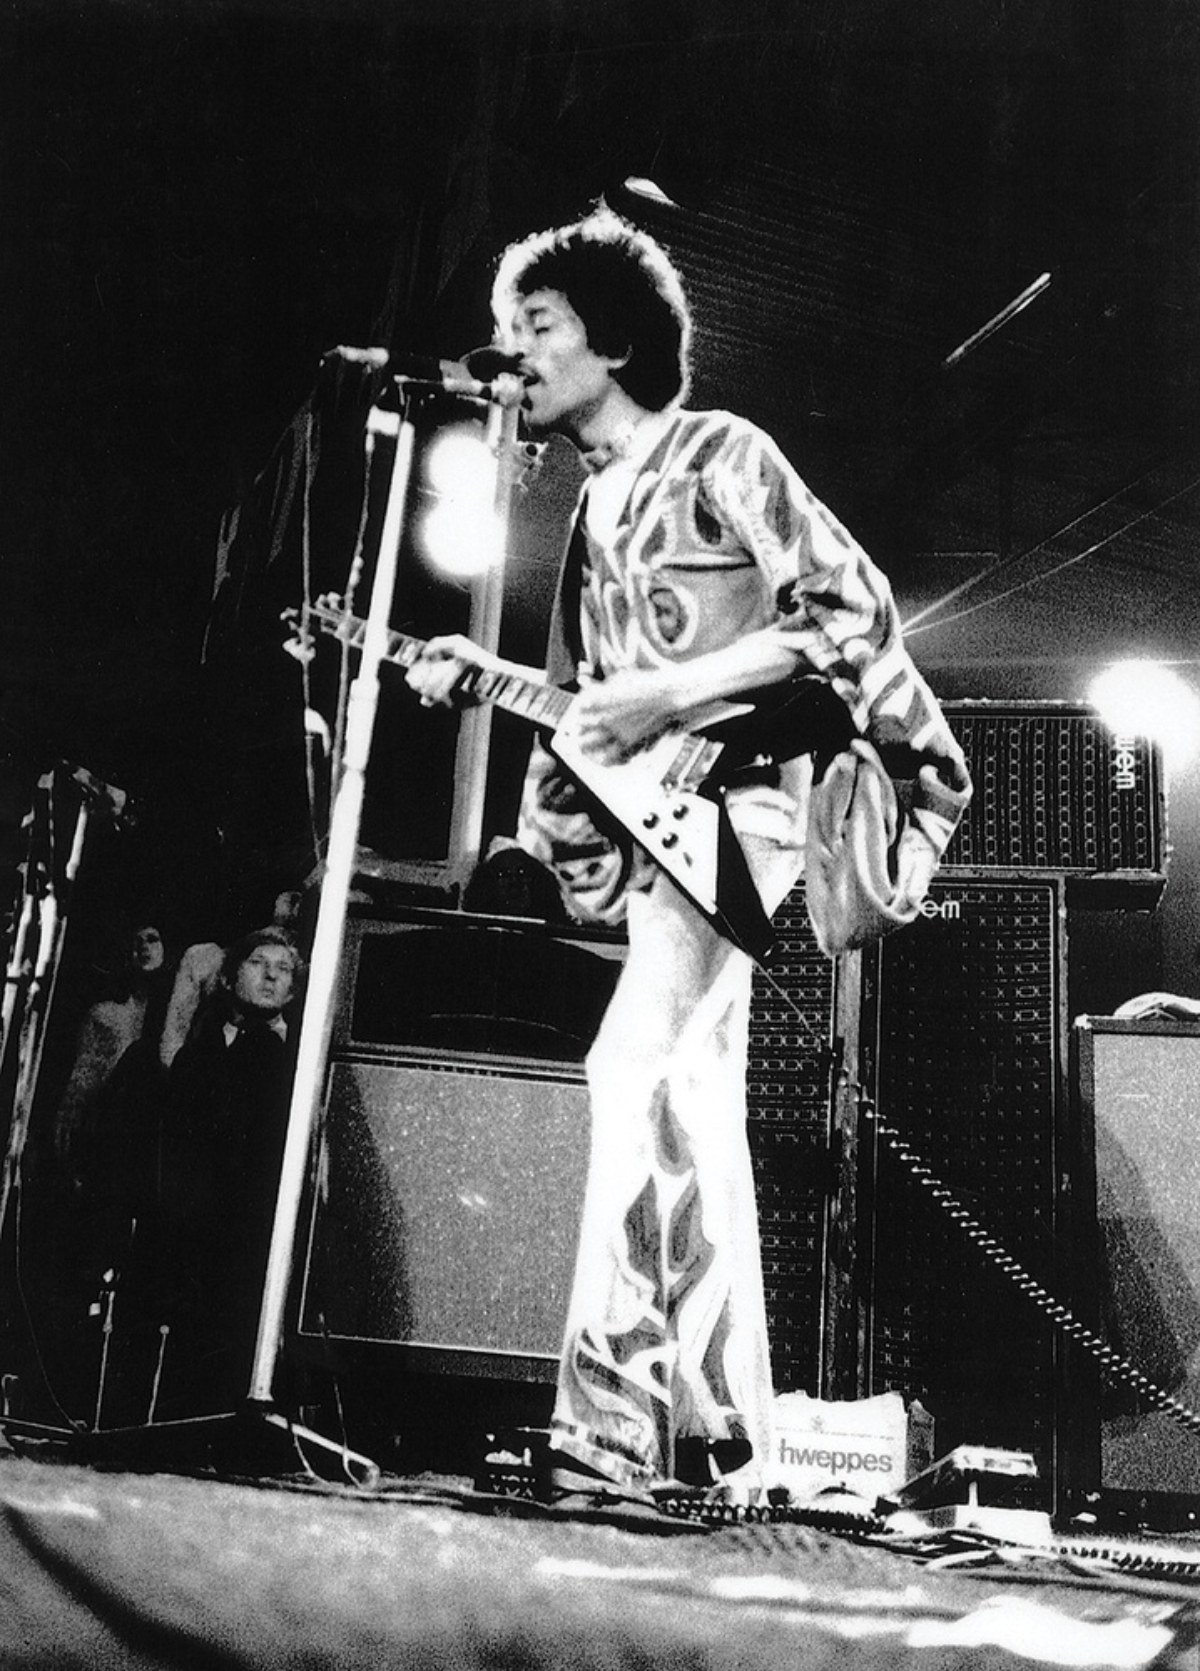 Джими Хендрикс на фестивале Isle of Wight в 1970 году